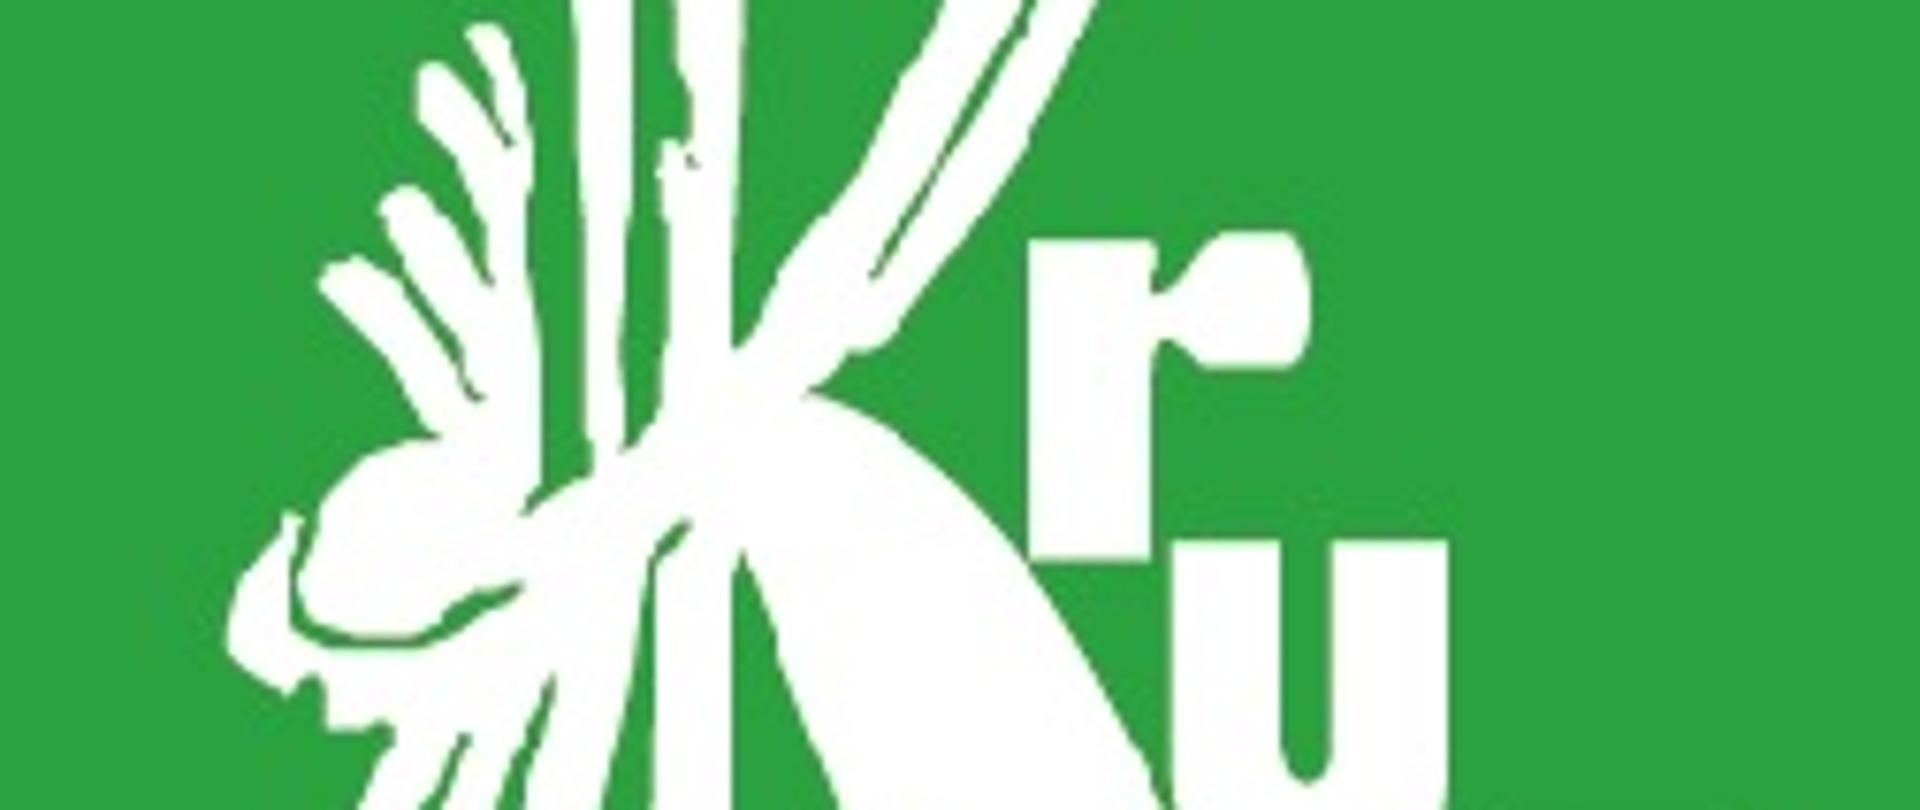 na zielonym tle w kształcie kwadratu białe litery tworzące napis "KRUS"